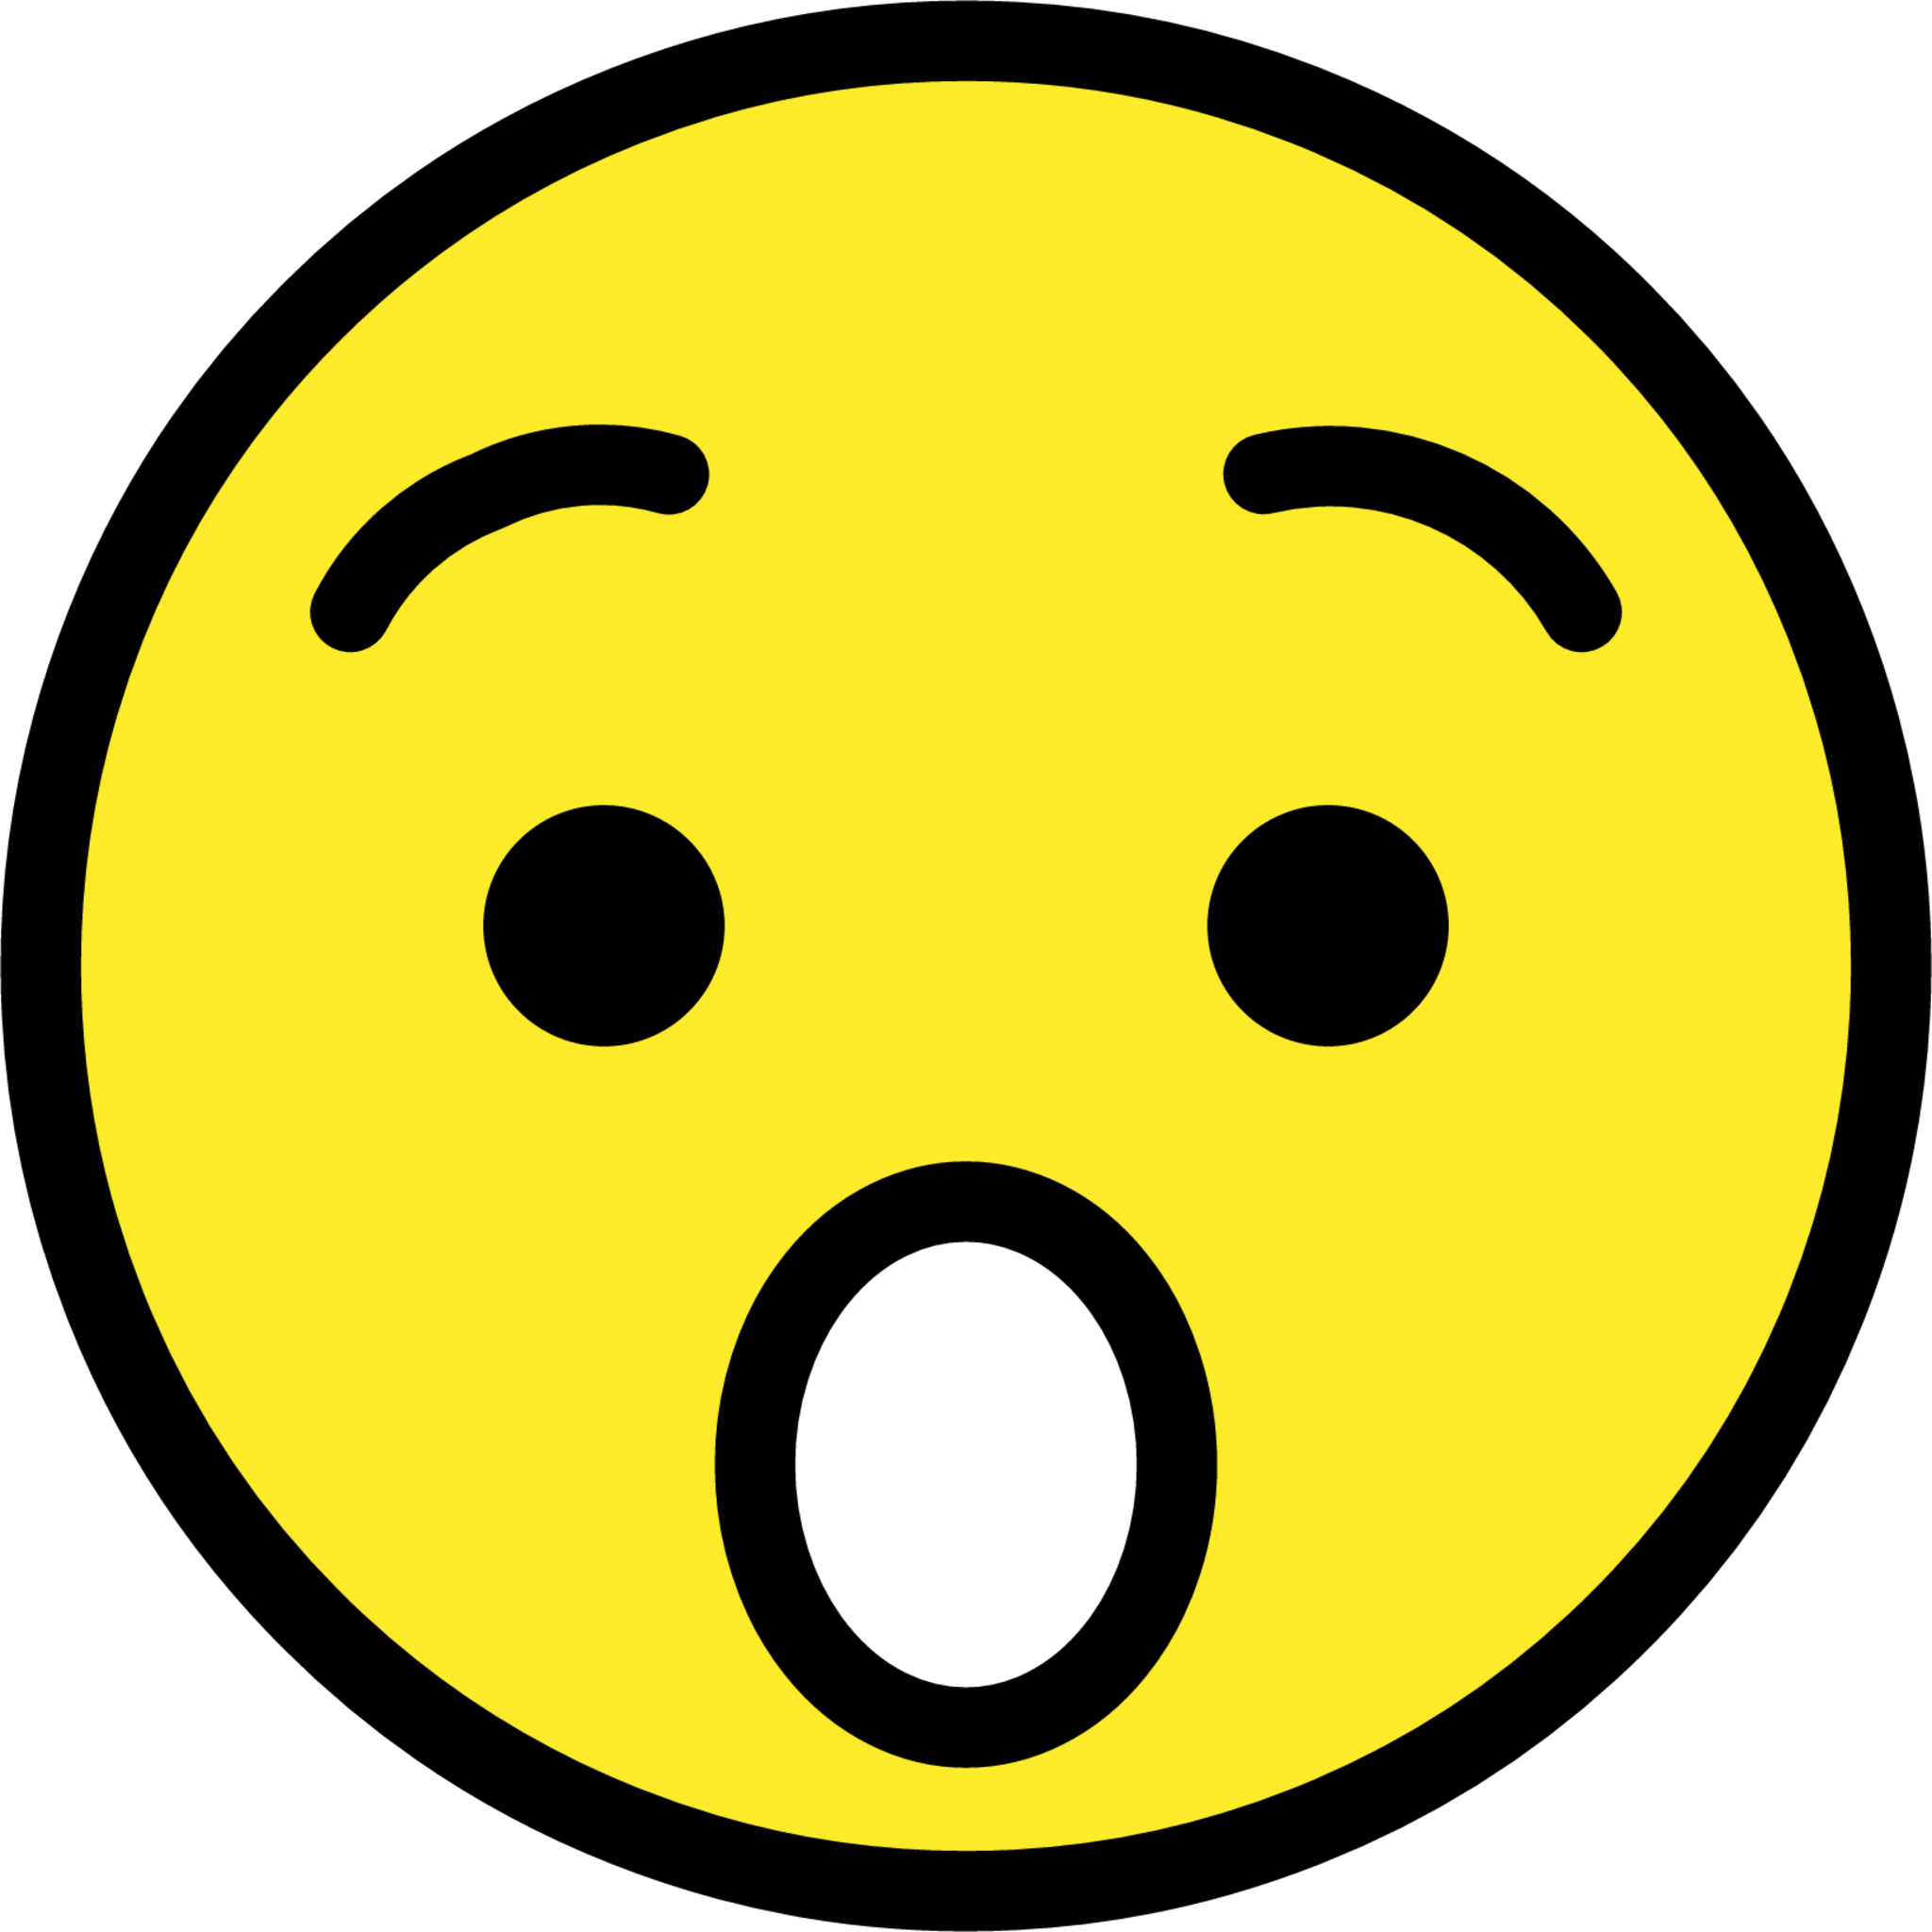 hushed face emoji